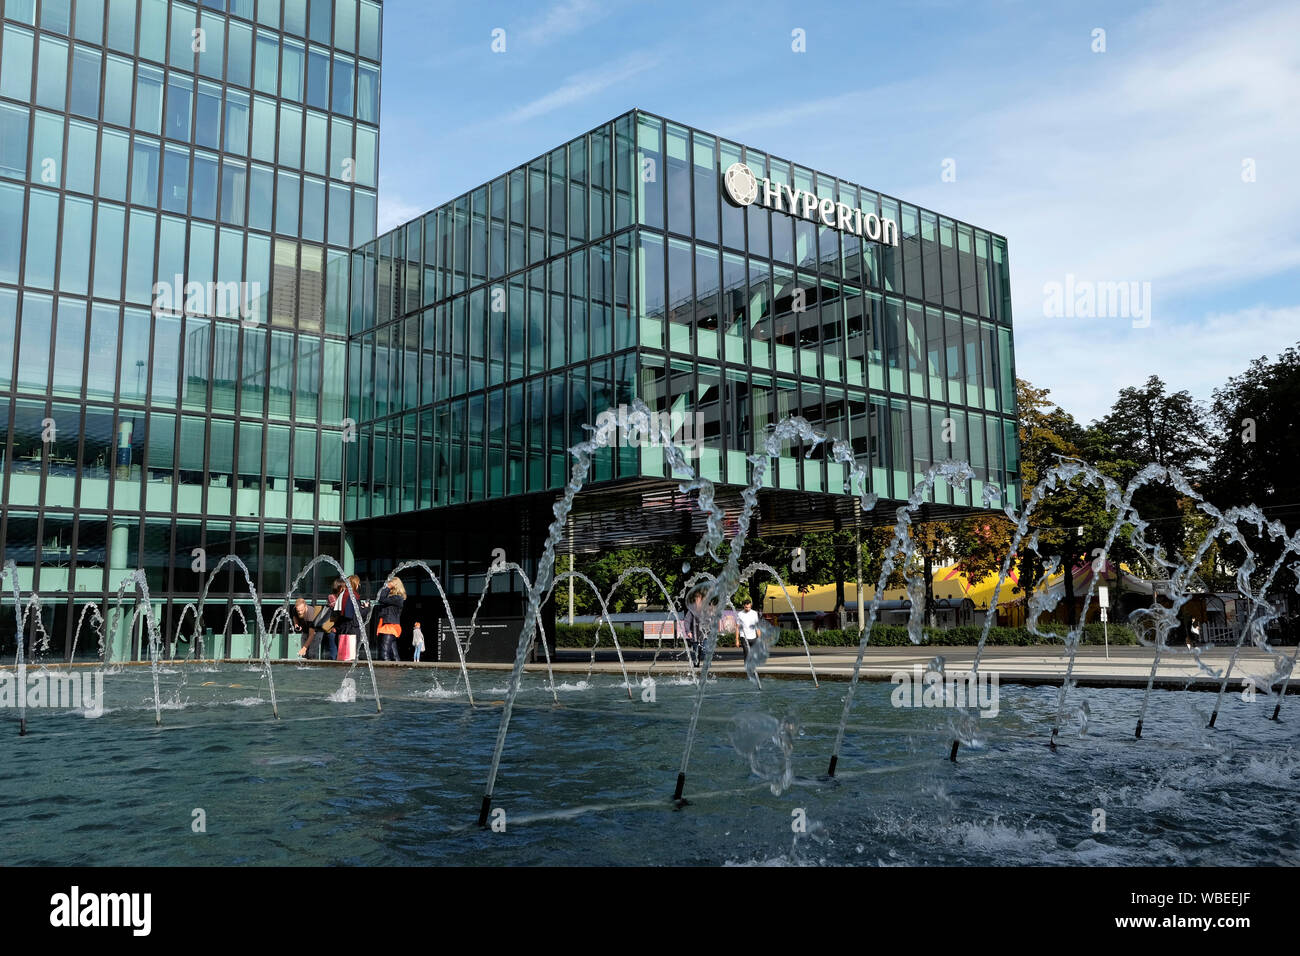 Eine Nahaufnahme der Hyperion Hotel, ehemals Ramada Plaza, Basel, Schweiz Stockfoto